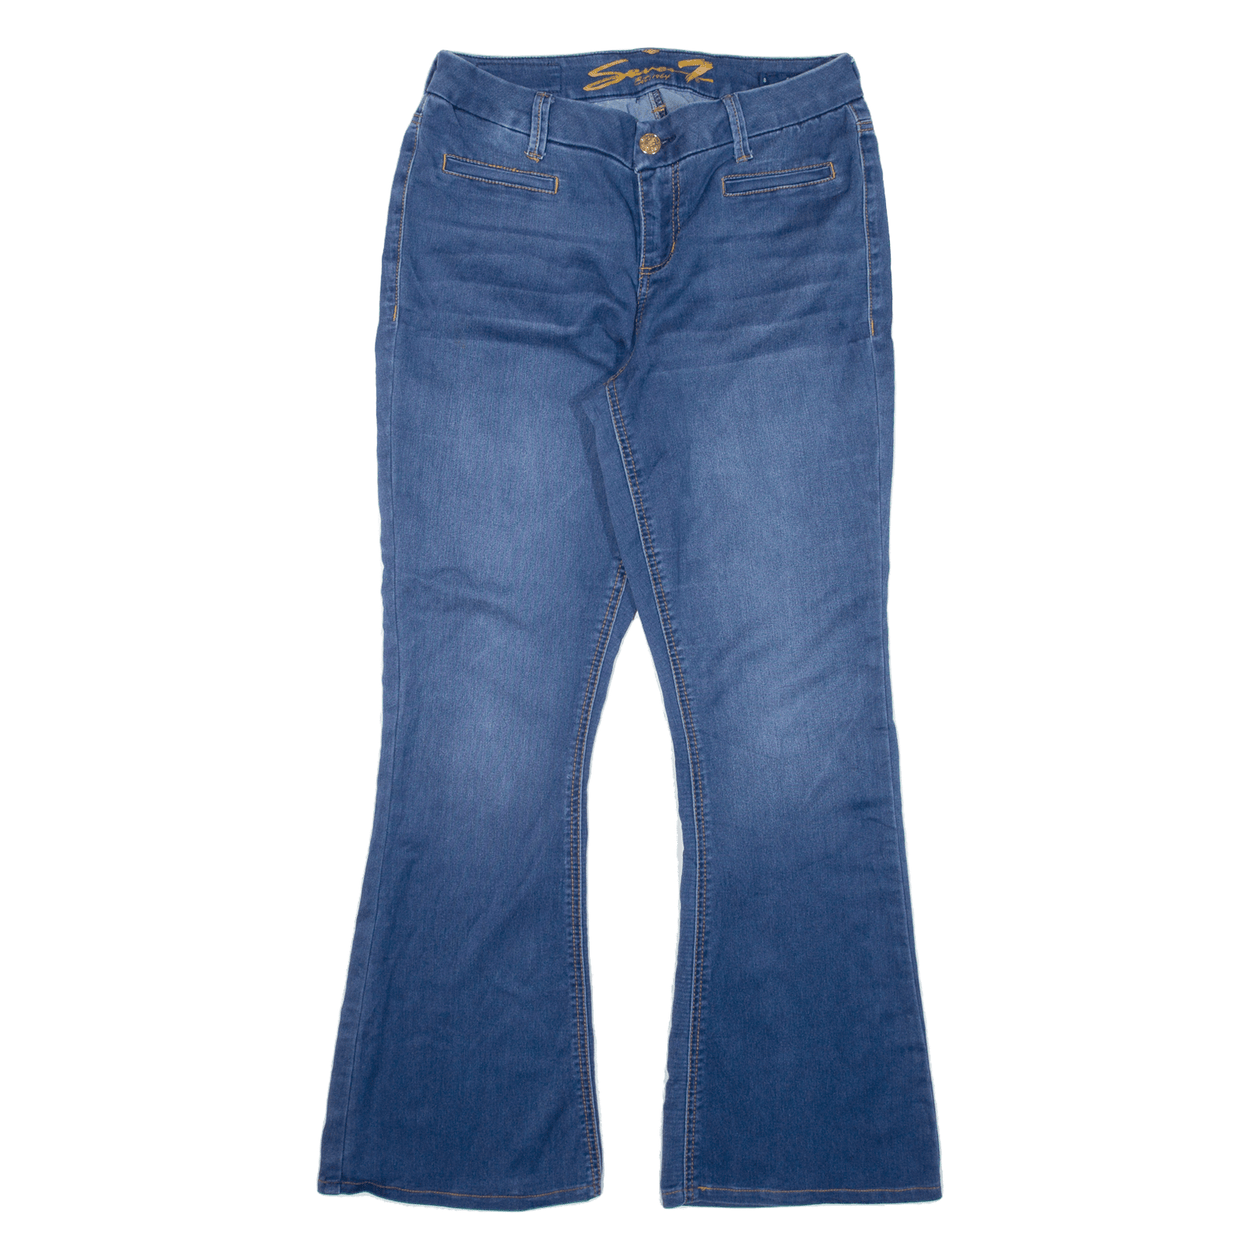 SEVEN7 Womens Jeans Blue Regular Flared W30 L29 – Cerqular Hong Kong